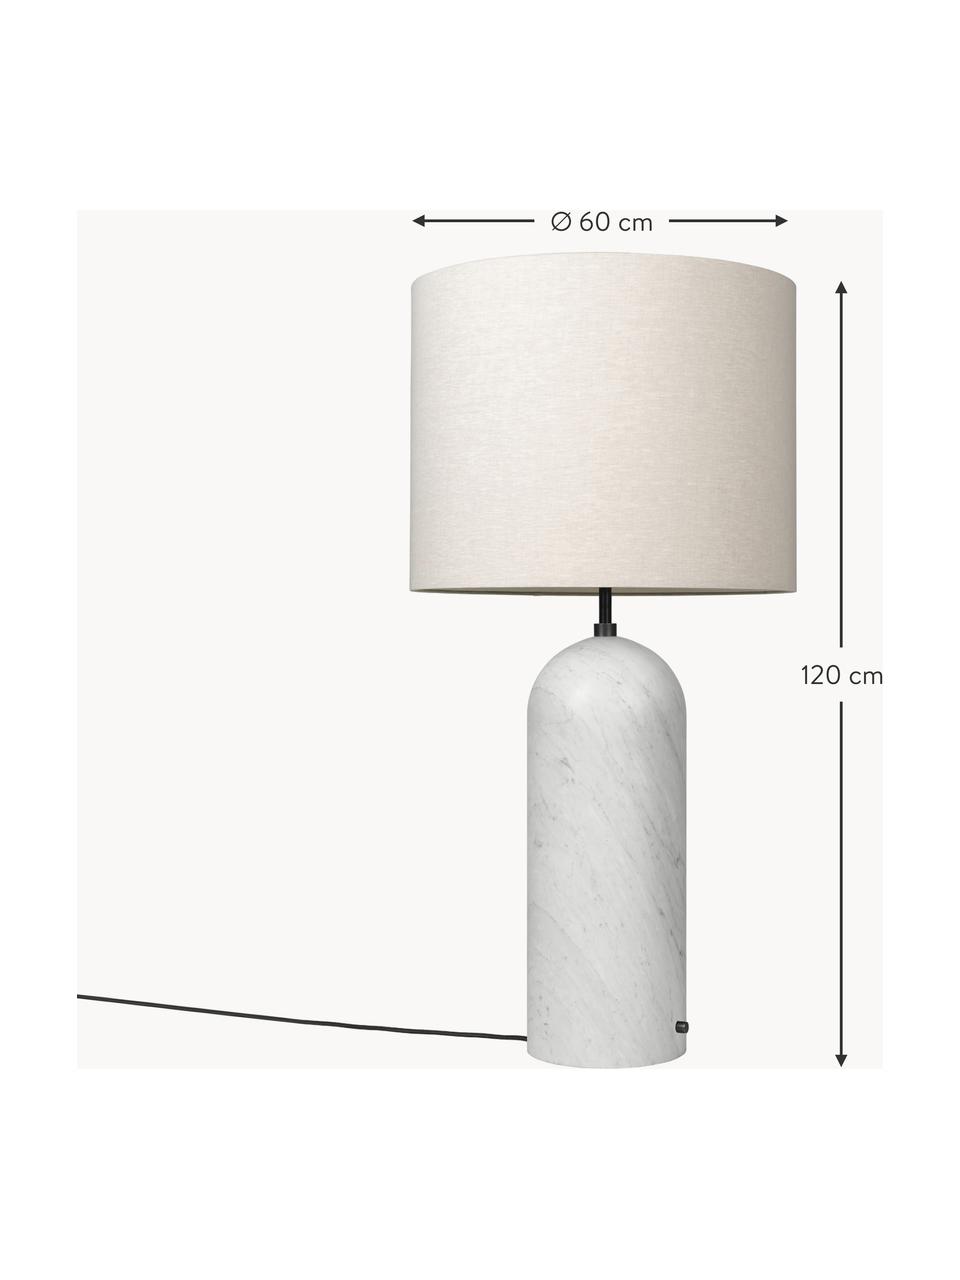 Malá stmívatelná stojací lampa s mramorovou podstavou Gravity, Světle béžová, mramorovaná bílá, V 120 cm